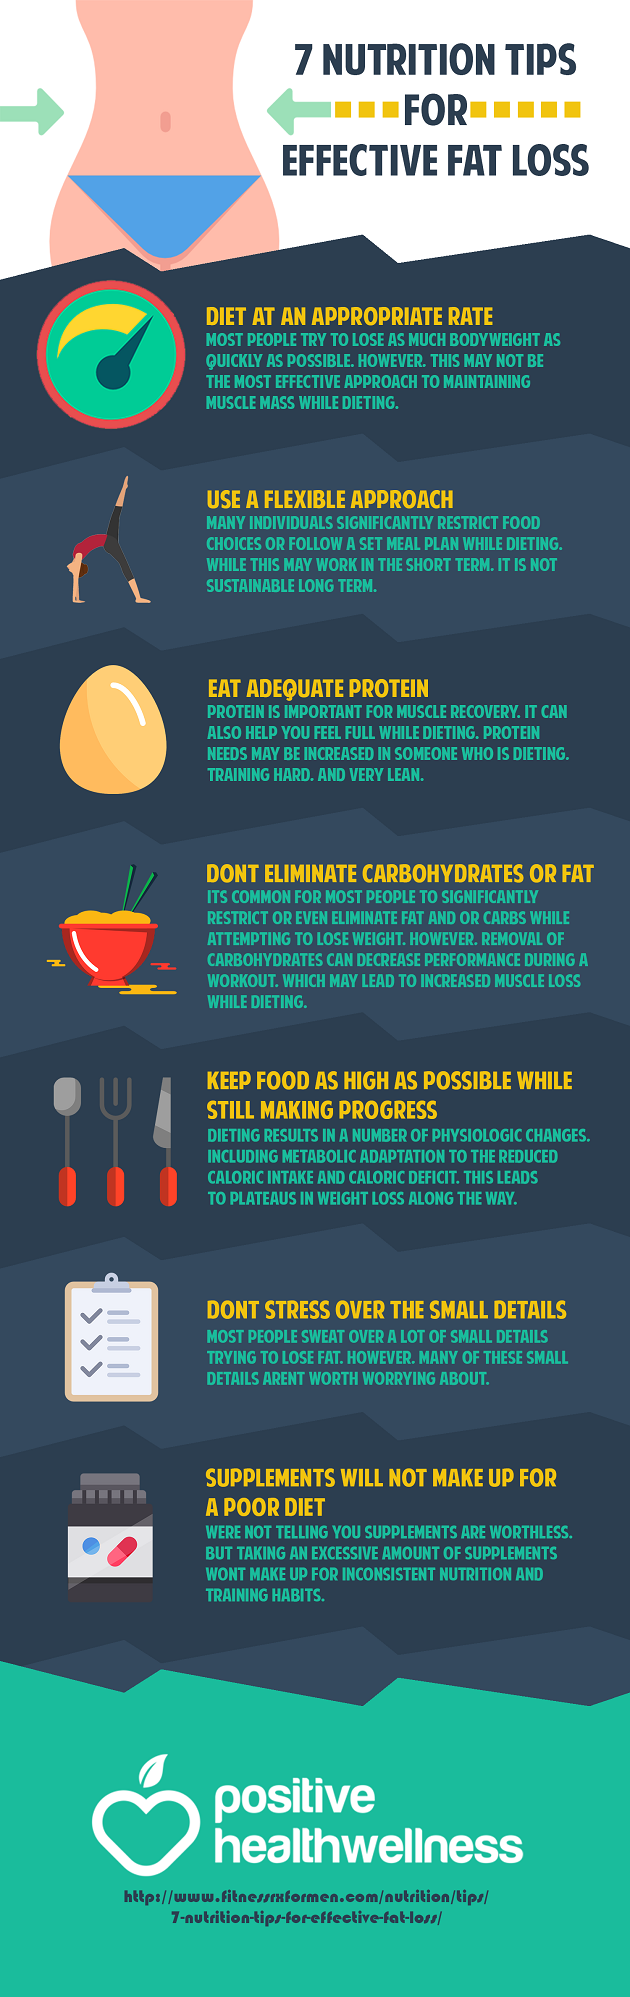 7 Nutrition Tips for Effective Fat Loss | Matt Swierzynski Personal Trainer